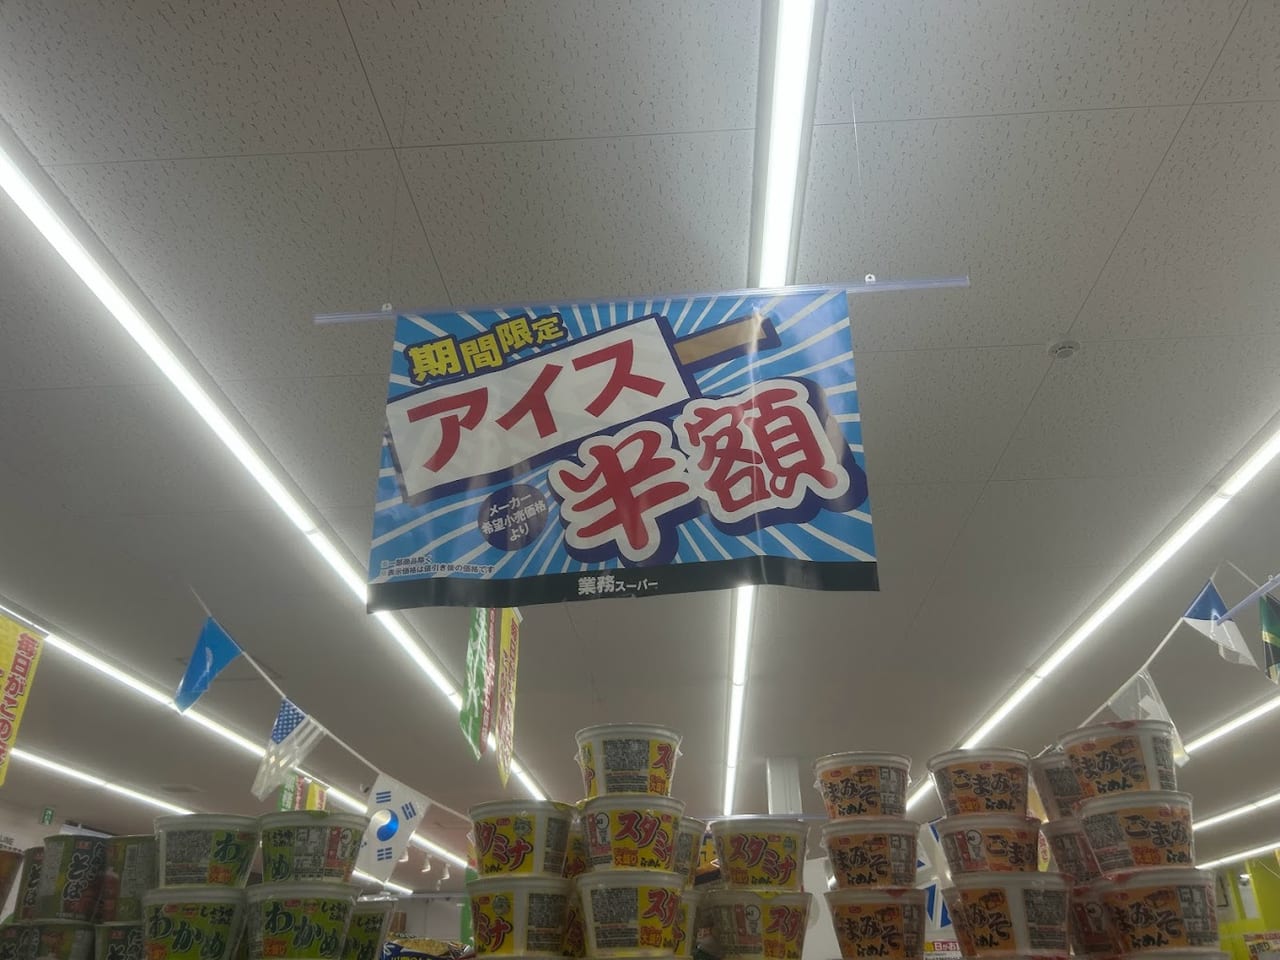 業務スーパー喜連西店アイス半額のお知らせ